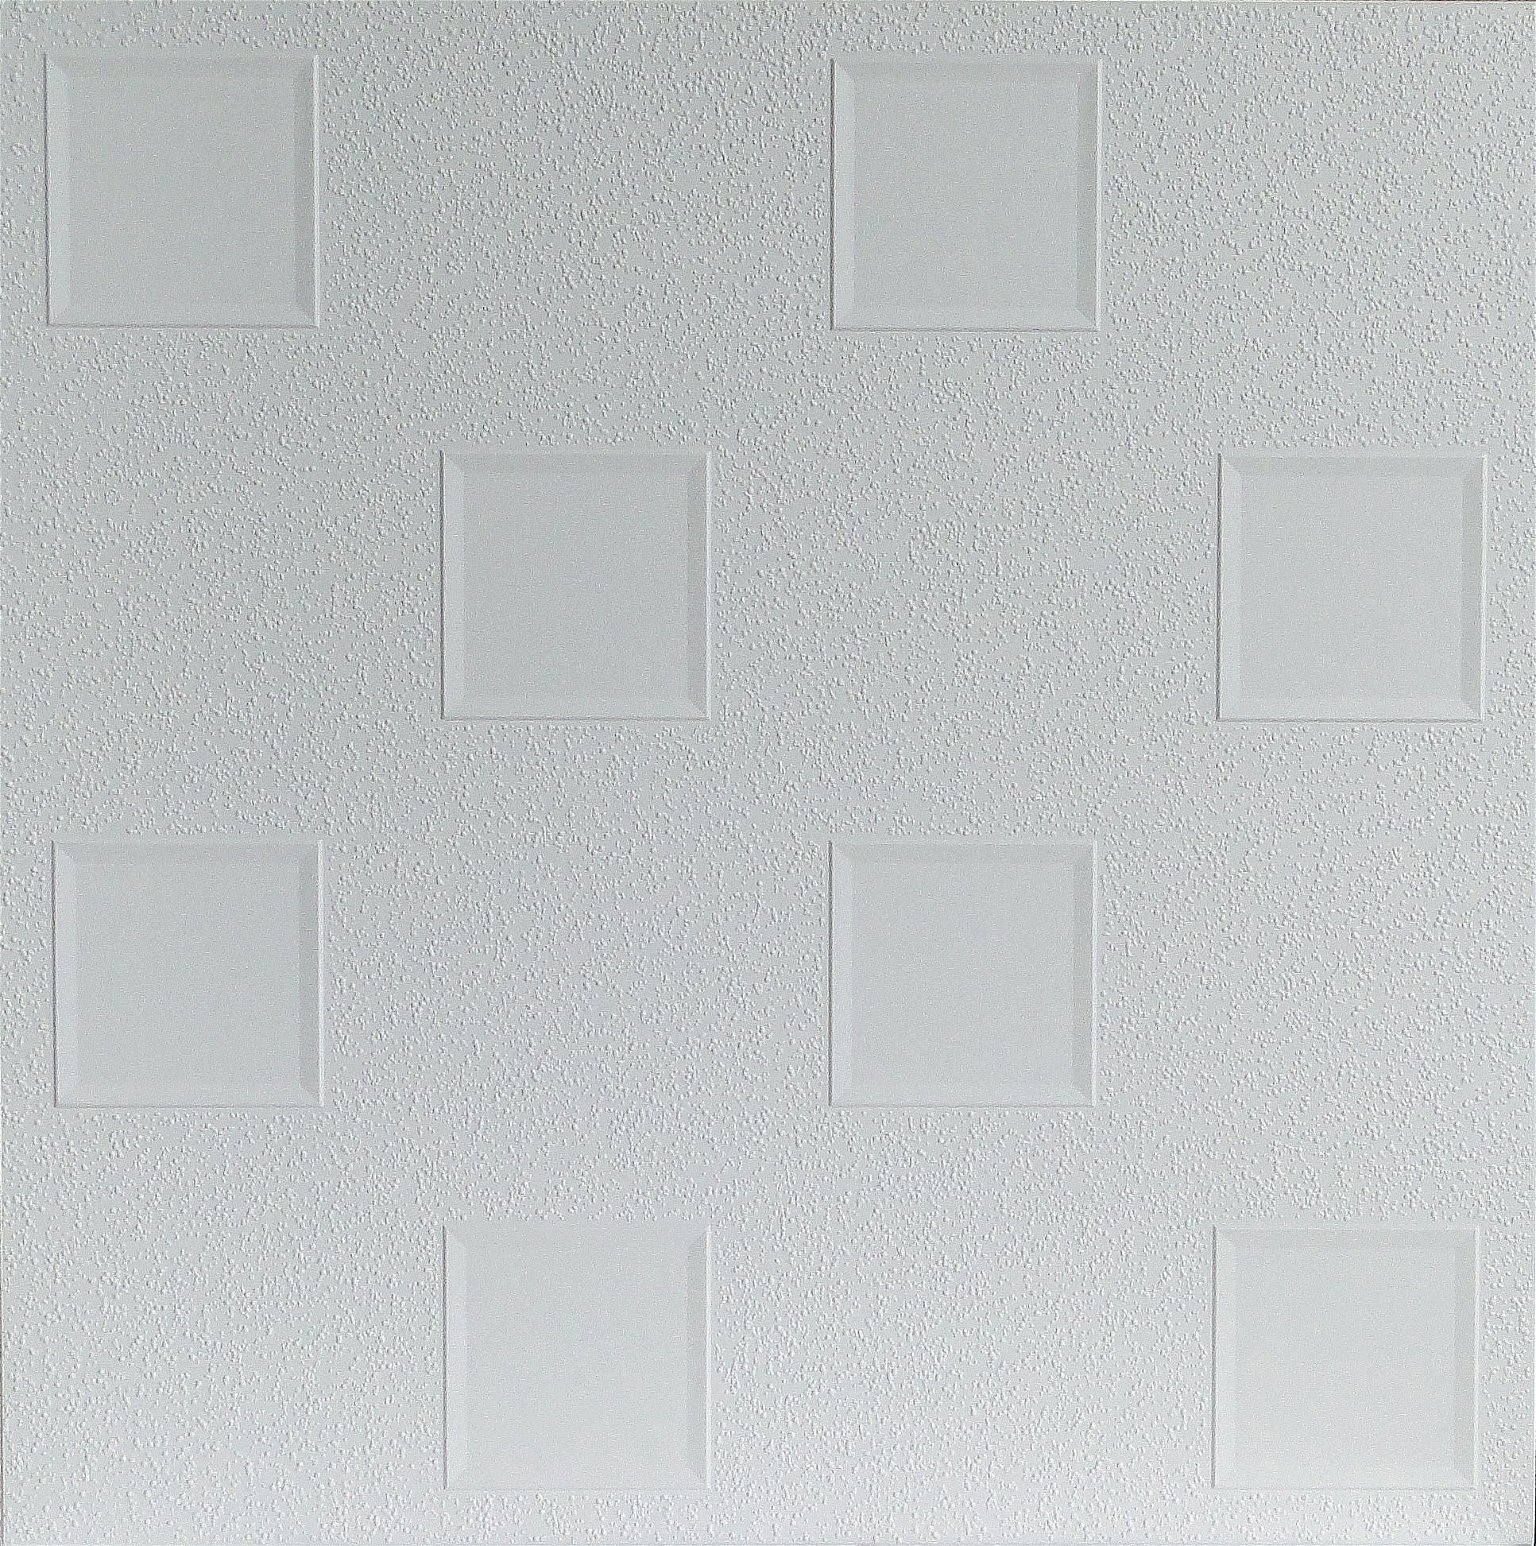 Klijuojamos lubų plokštės OKTAWA, plaunamos, baltos sp., 50 x 50 cm